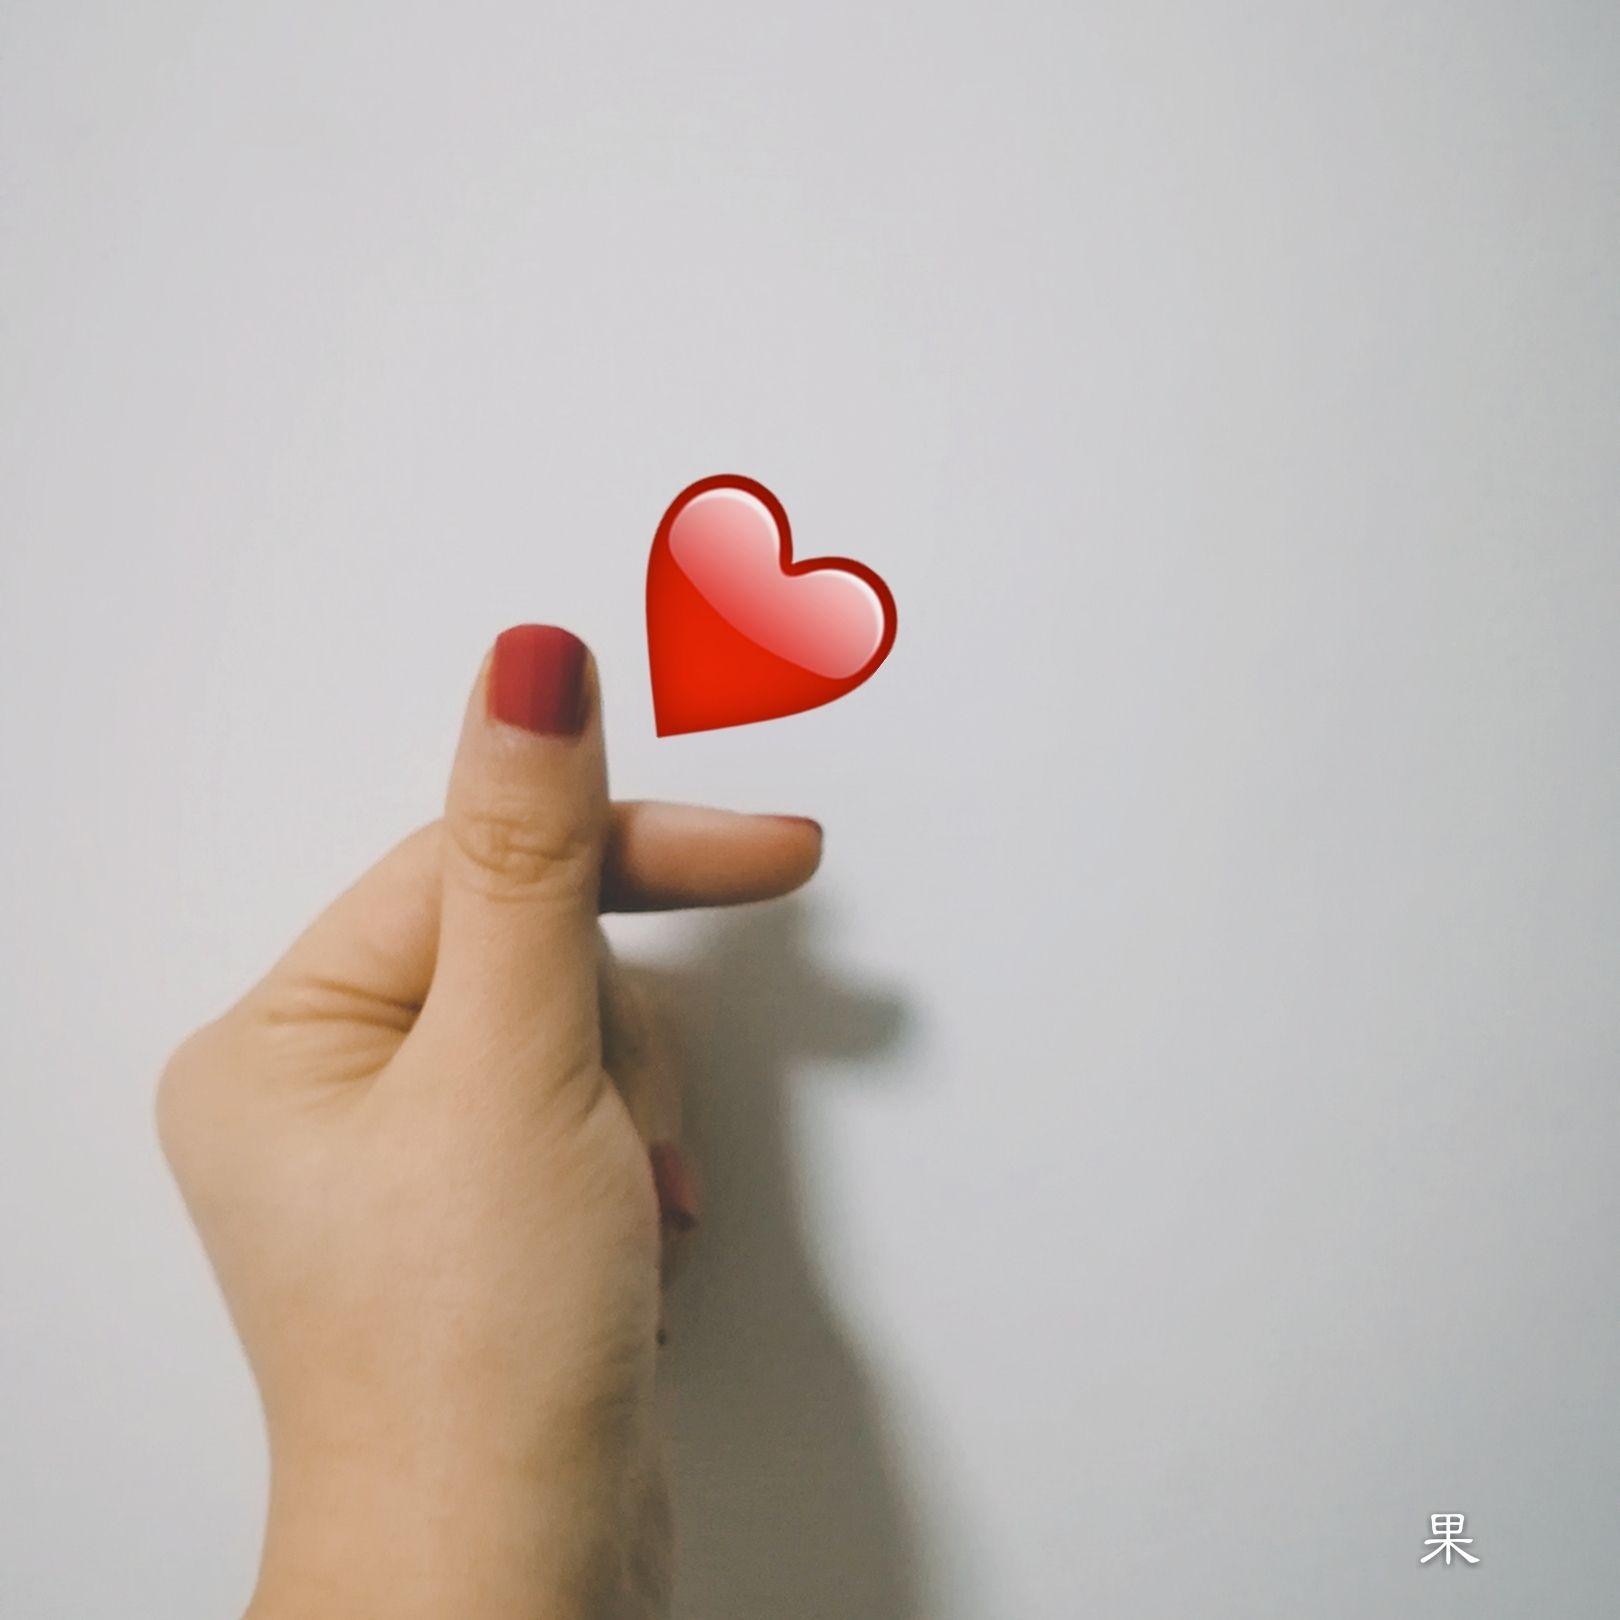 现在有什么流行的表达爱心的手势,除了之前的那个手指heart? 